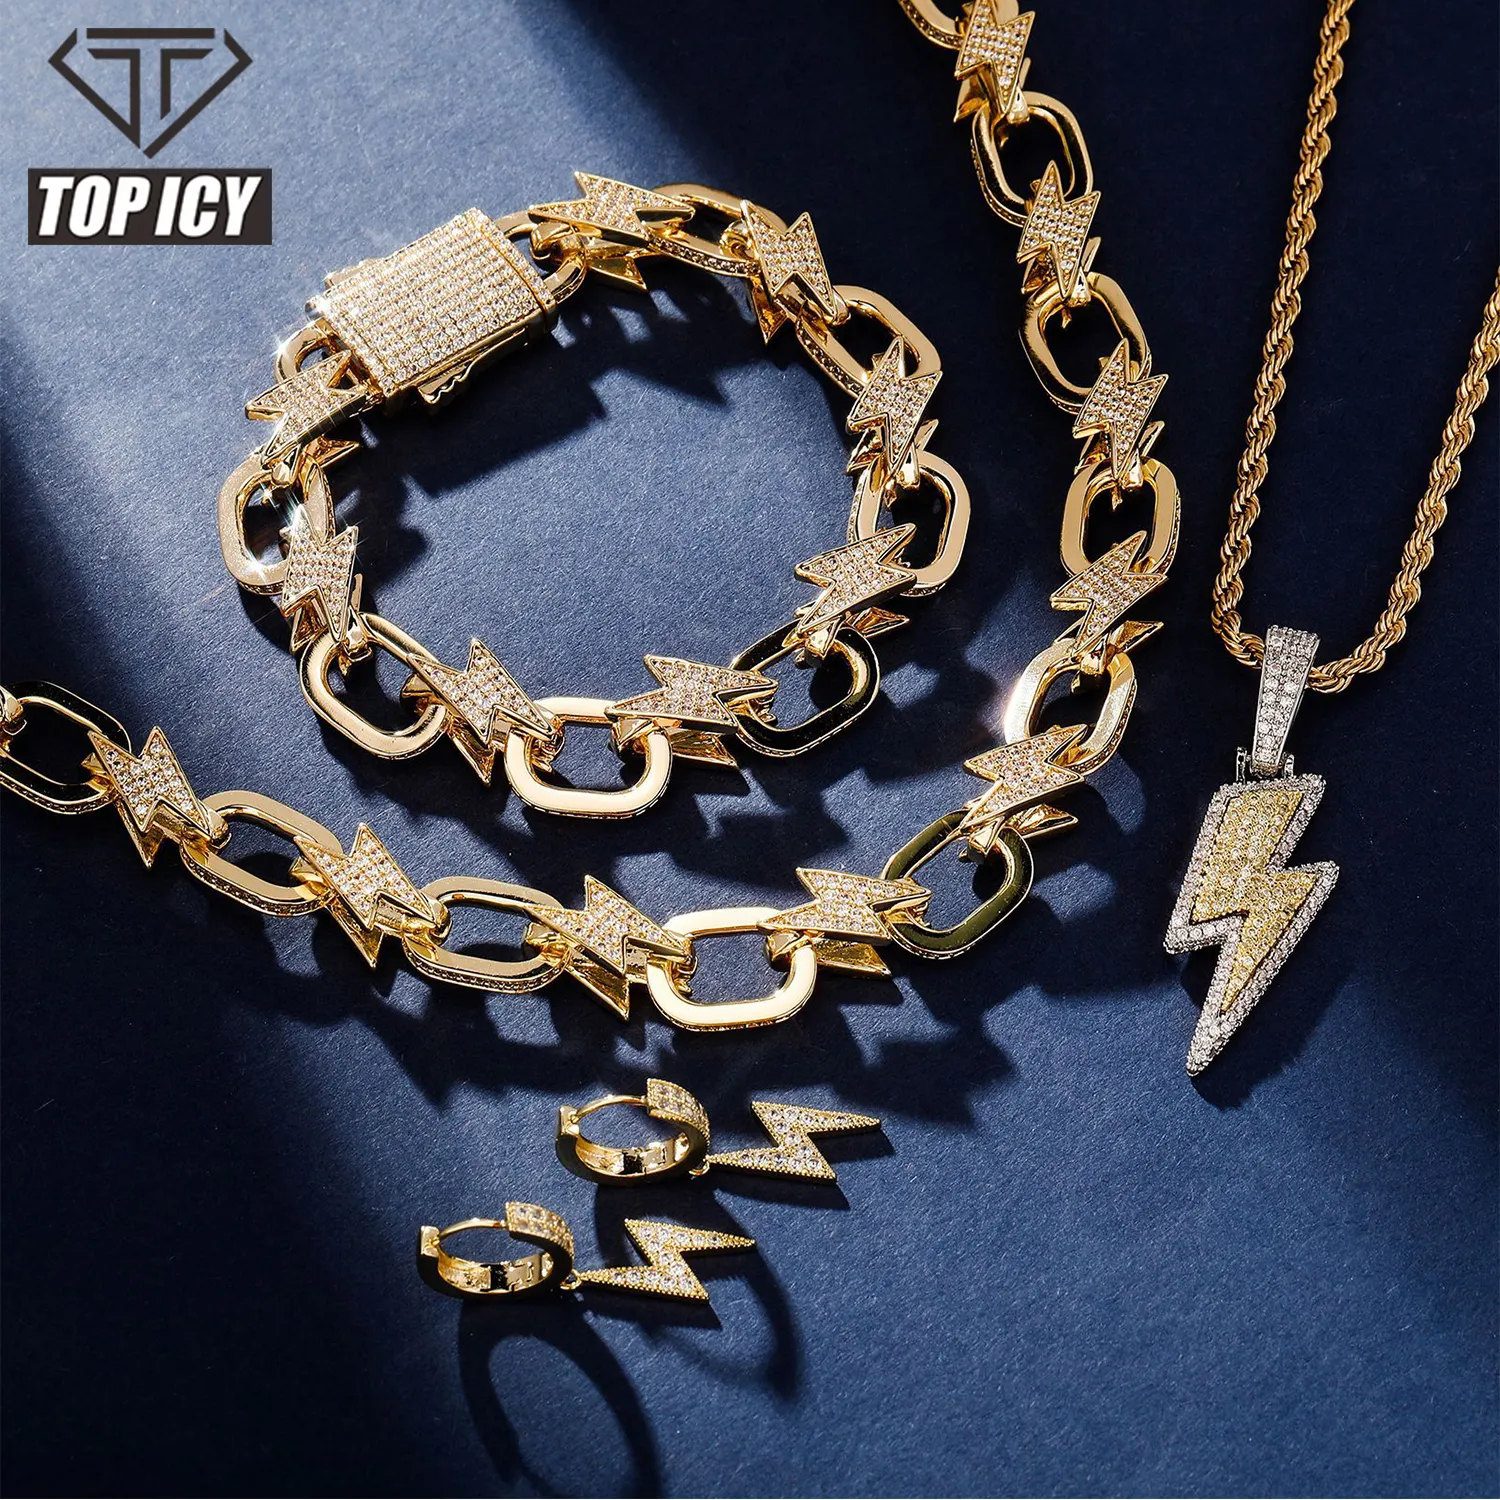 TOP ICY Blitz Armband Halskette Schmuck Set Hip Hop CZ Beleuchtung Design Anhänger Ohrring Bling Bling Schmuck Bündel